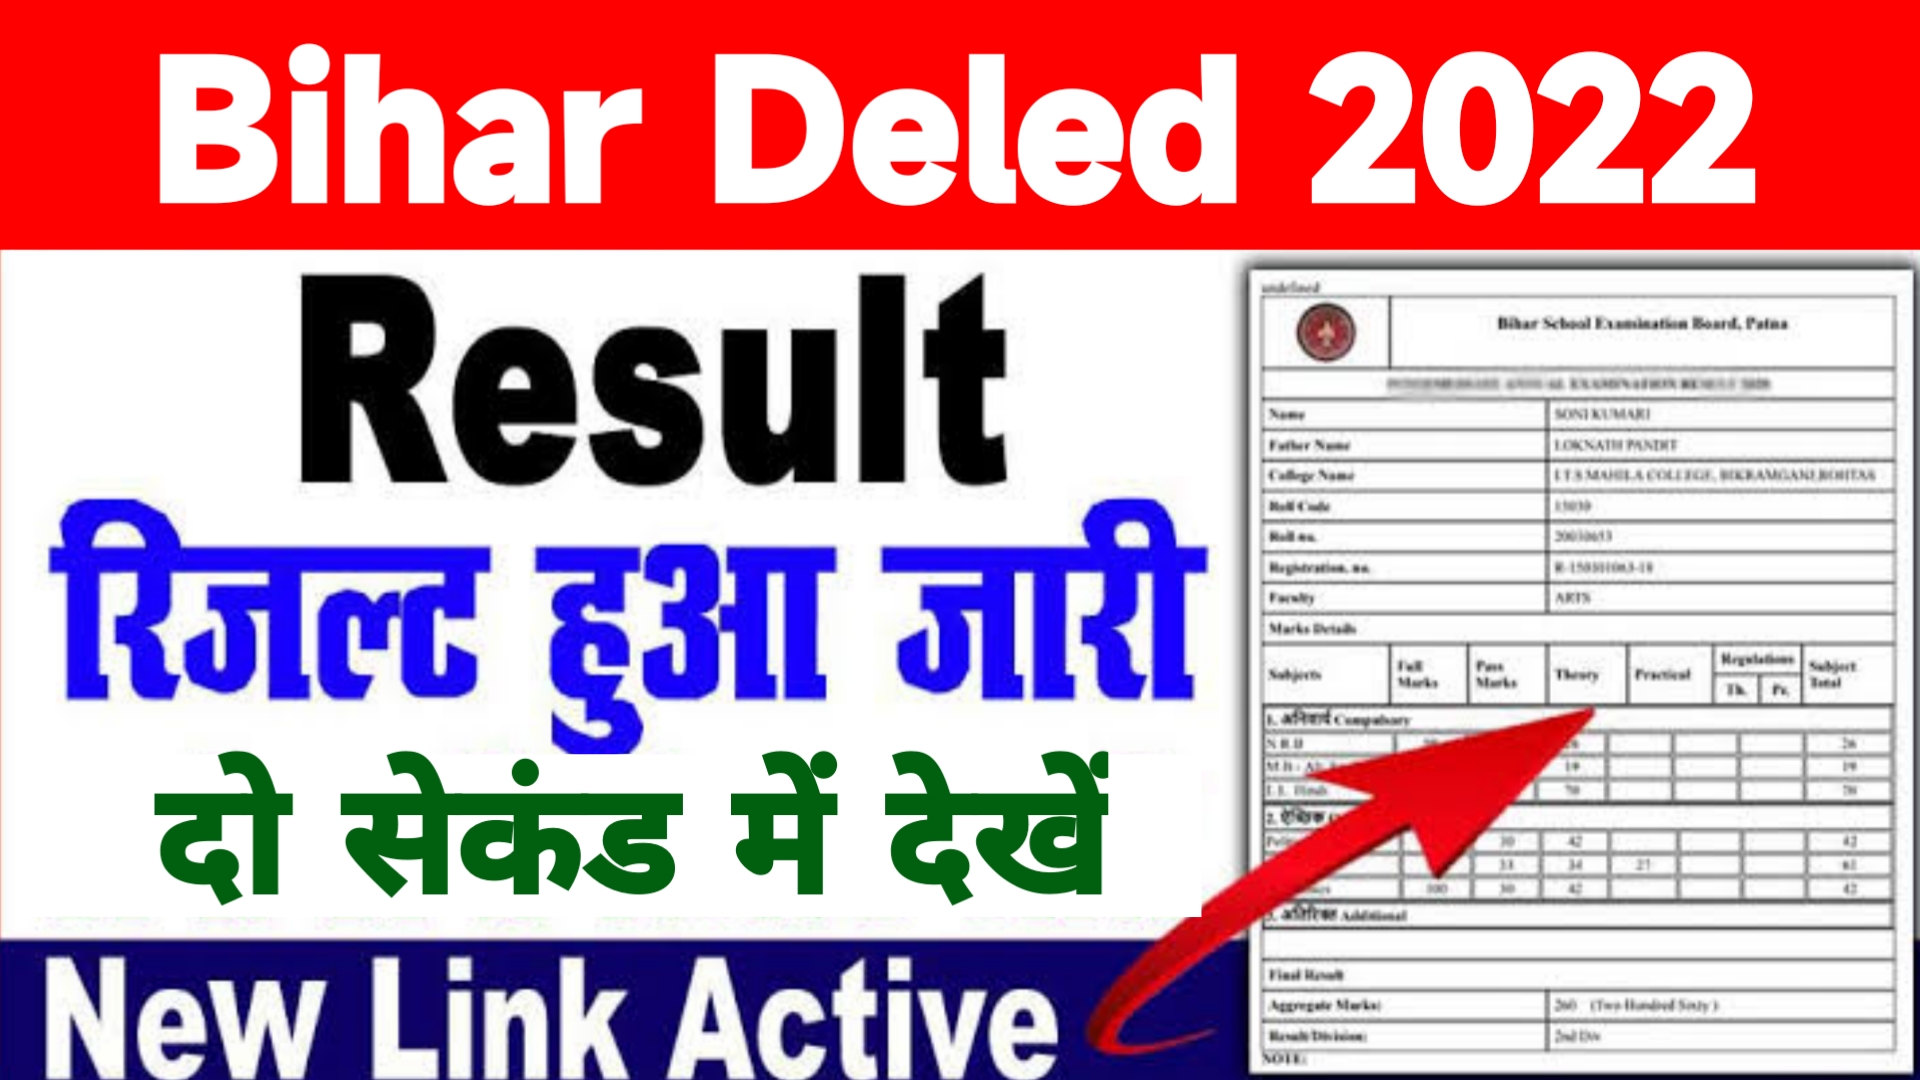 Bihar Deled Result 2022 Live Check DELEd Entrance Scorecard & Cut Off